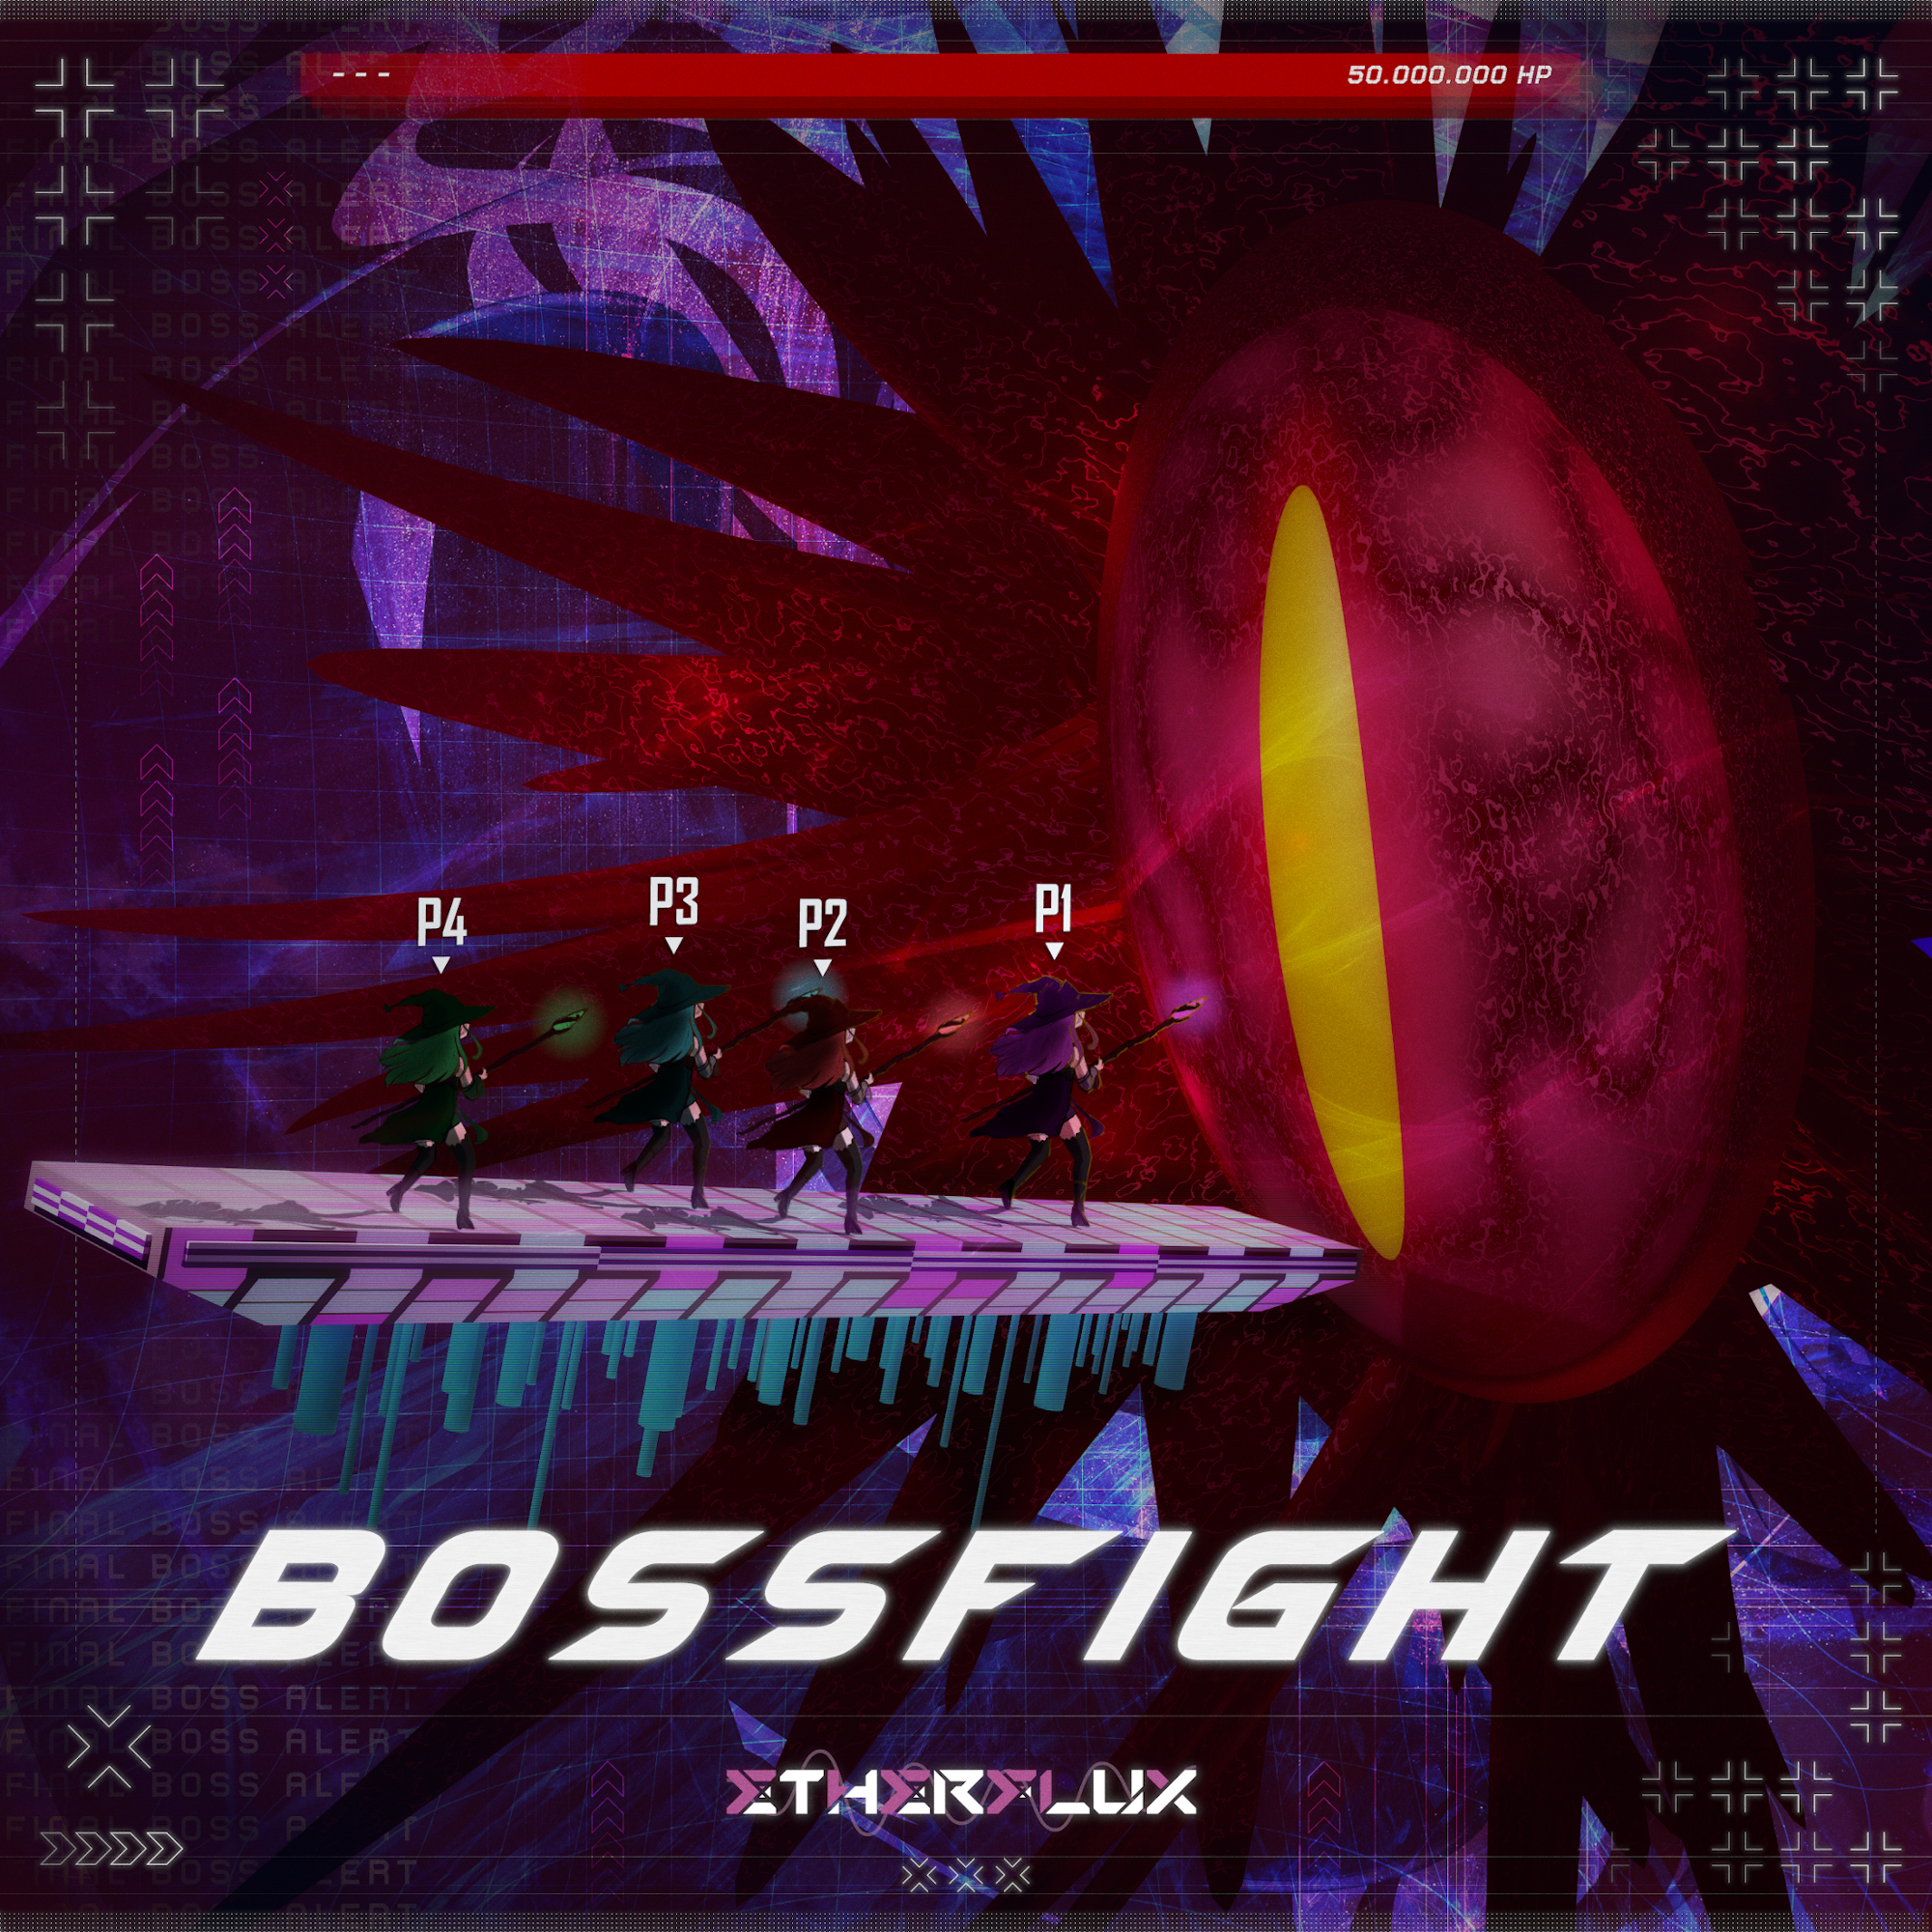 BOSSFIGHT album cover